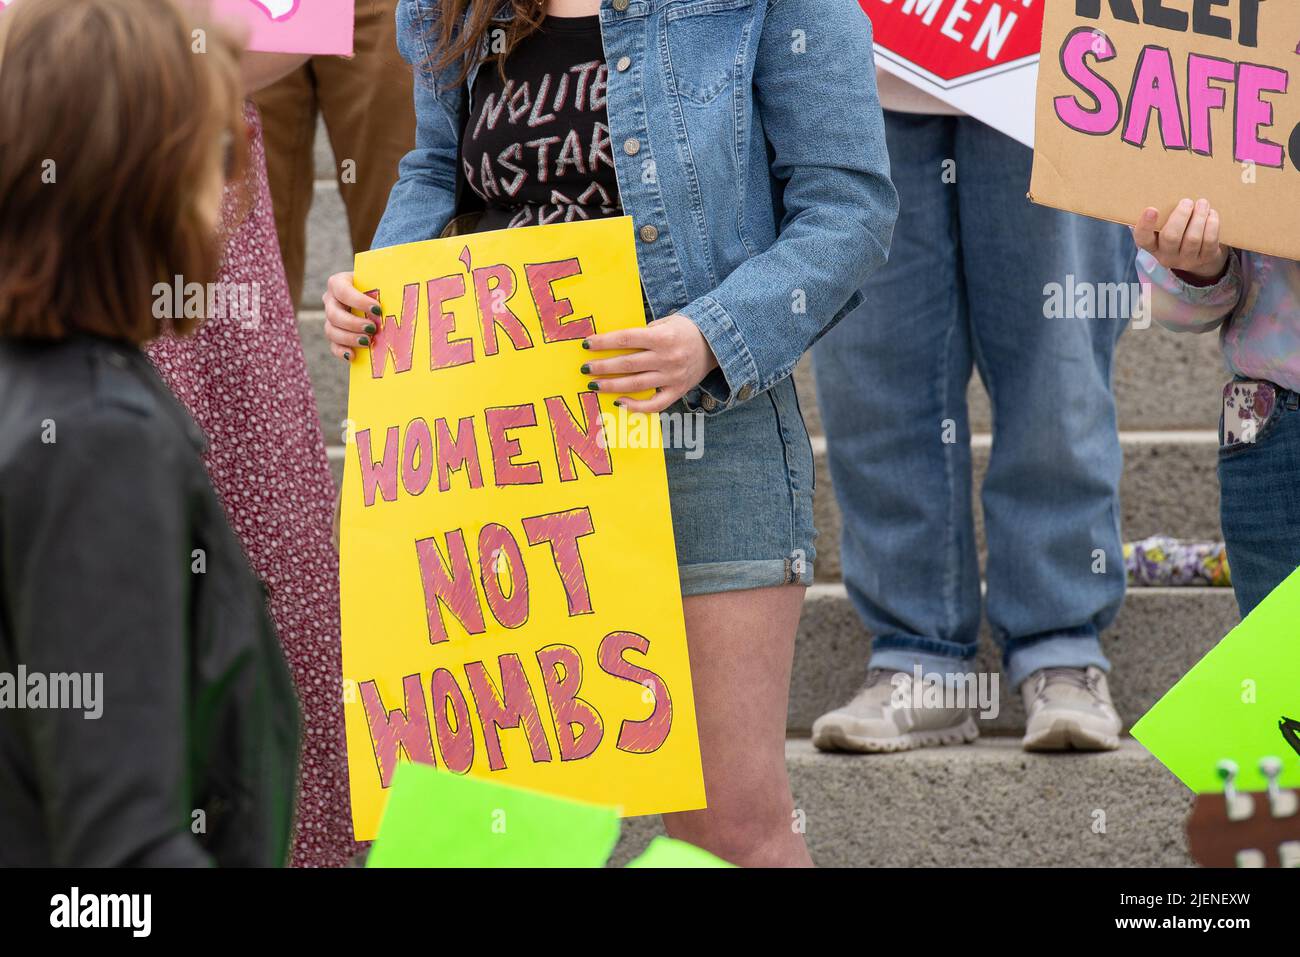 Helena, Montana - 24 de junio de 2022: La mujer sostiene que somos mujeres no wombs firmar en protesta por la prohibición del aborto, la protesta pro elección en el capitolio del estado de Montana, demonstr Foto de stock